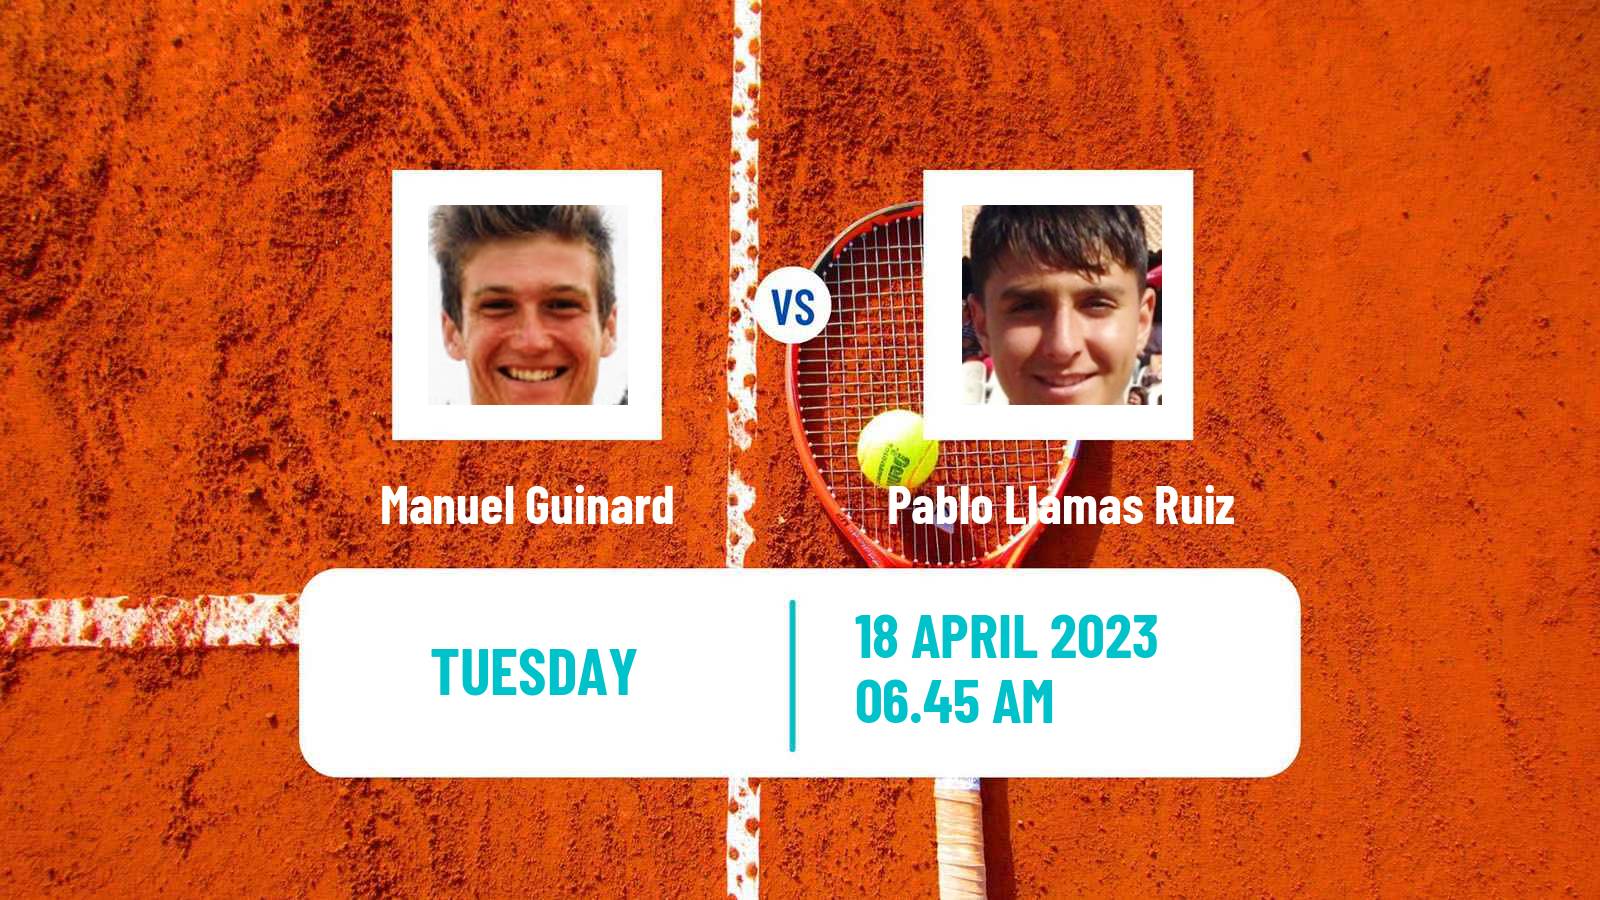 Tennis ATP Challenger Manuel Guinard - Pablo Llamas Ruiz